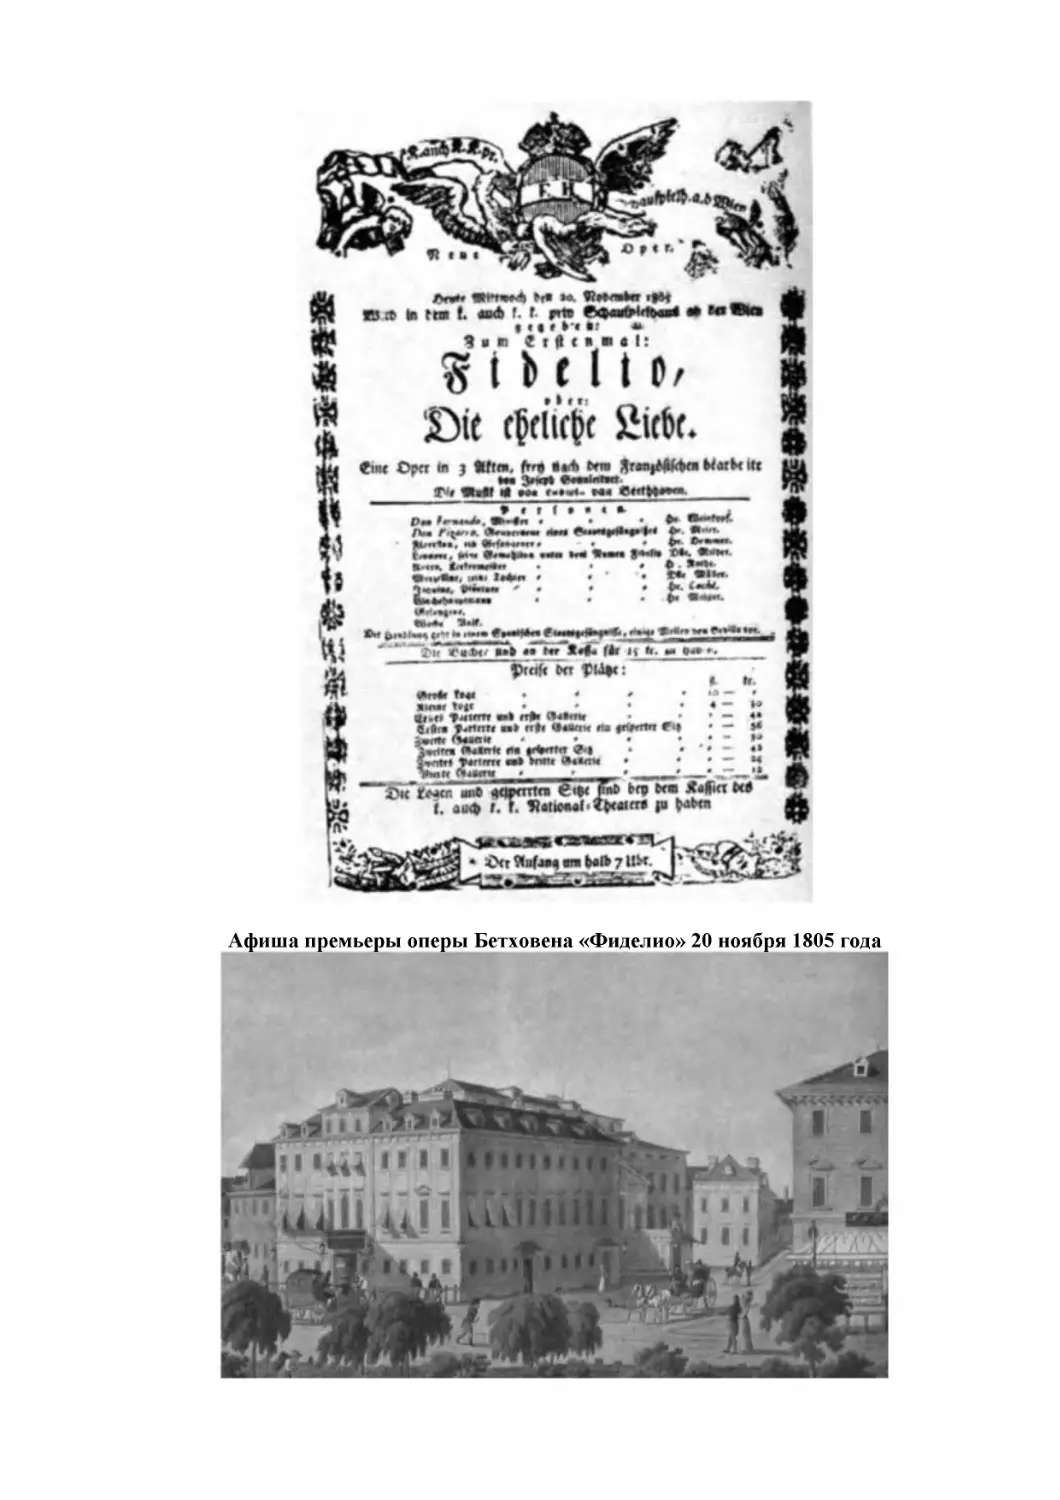 Афиша премьеры оперы Бетховена «Фиделио» 20 ноября 1805 года